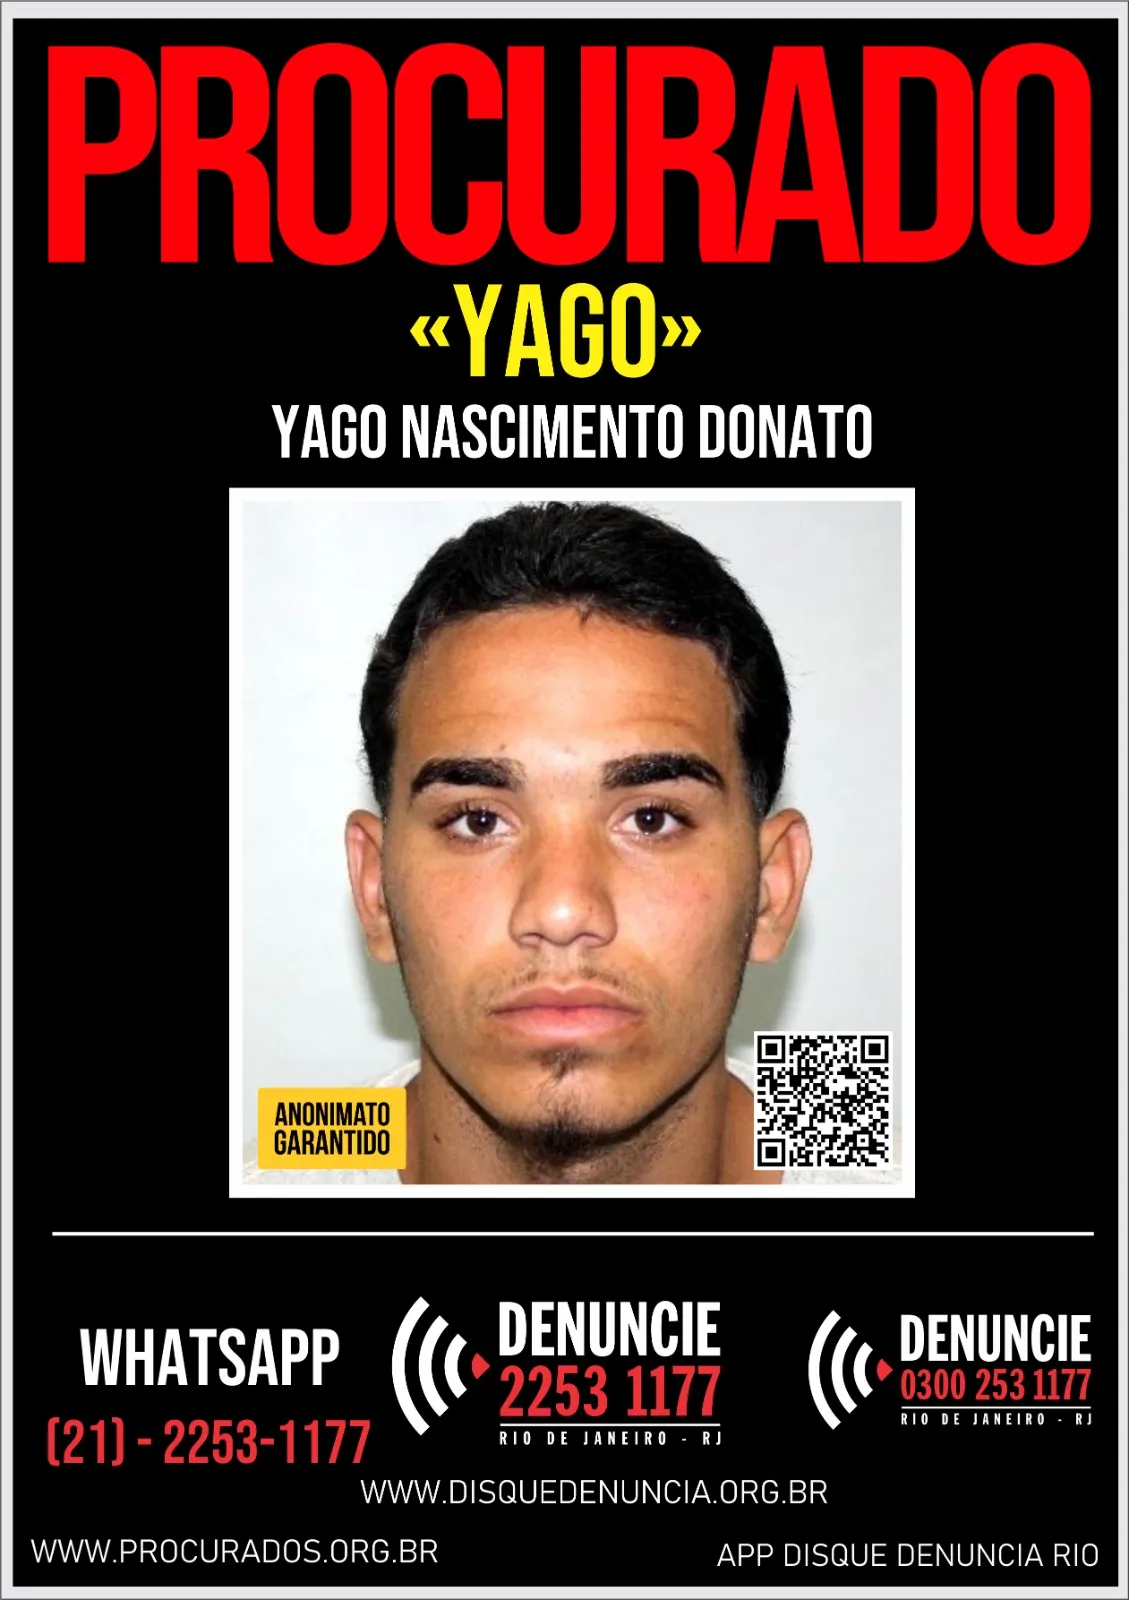 O Disque Denúncia divulgou um cartaz pedindo informações sobre o paradeiro de Yago Nascimento Donato, de 23 anos